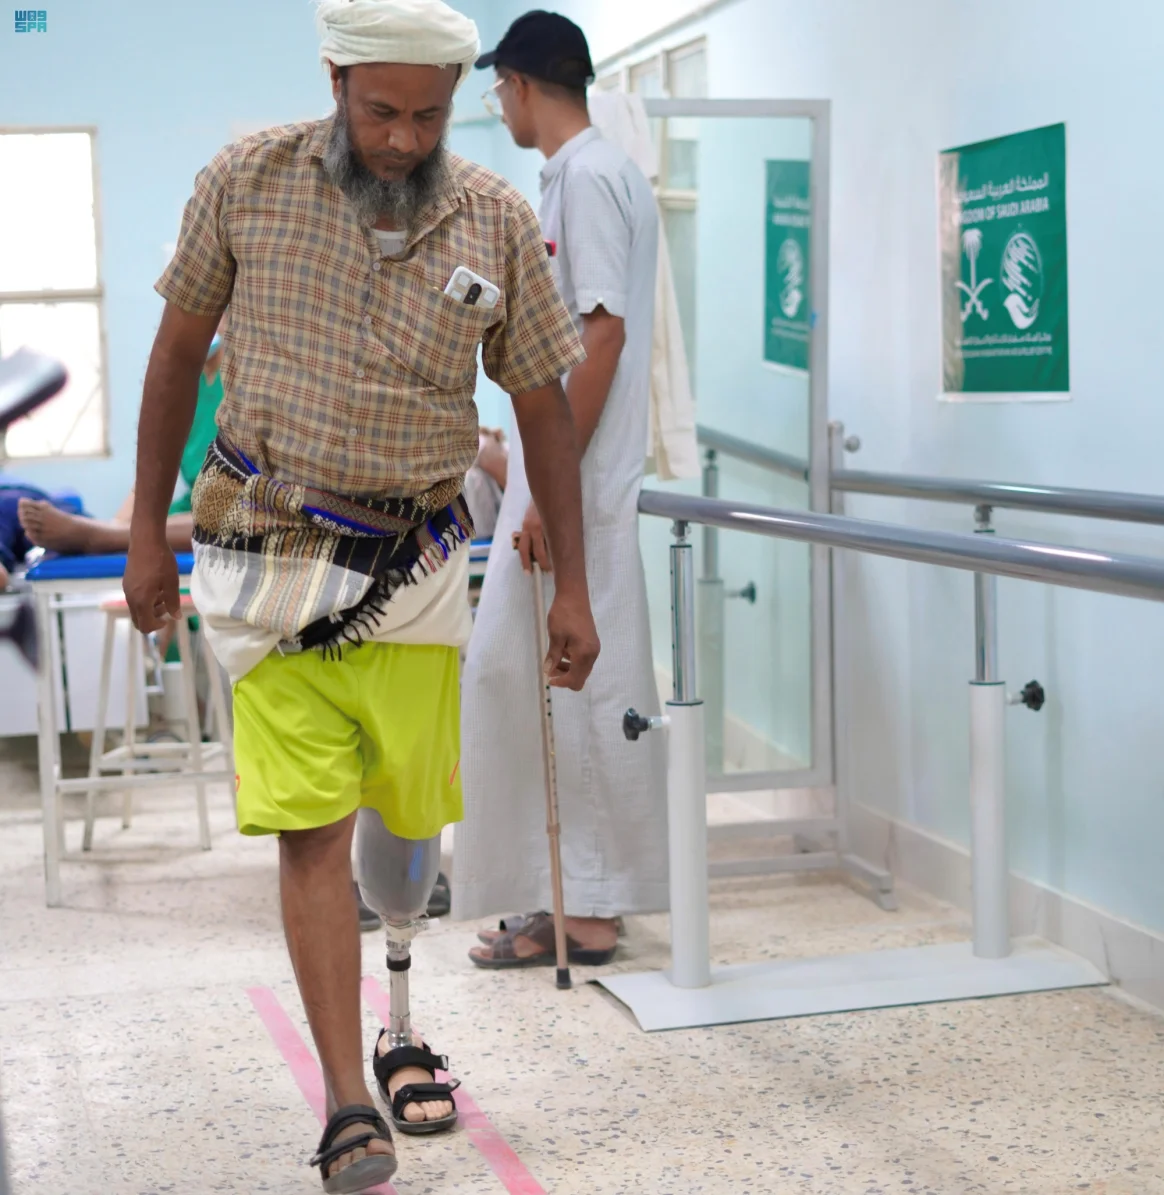 بدعم من مركز الملك سلمان للإغاثة مركز الأطراف الصناعية في سيئون يُقدم خدماته الطبية لـ 308 أشخاص في أغسطس